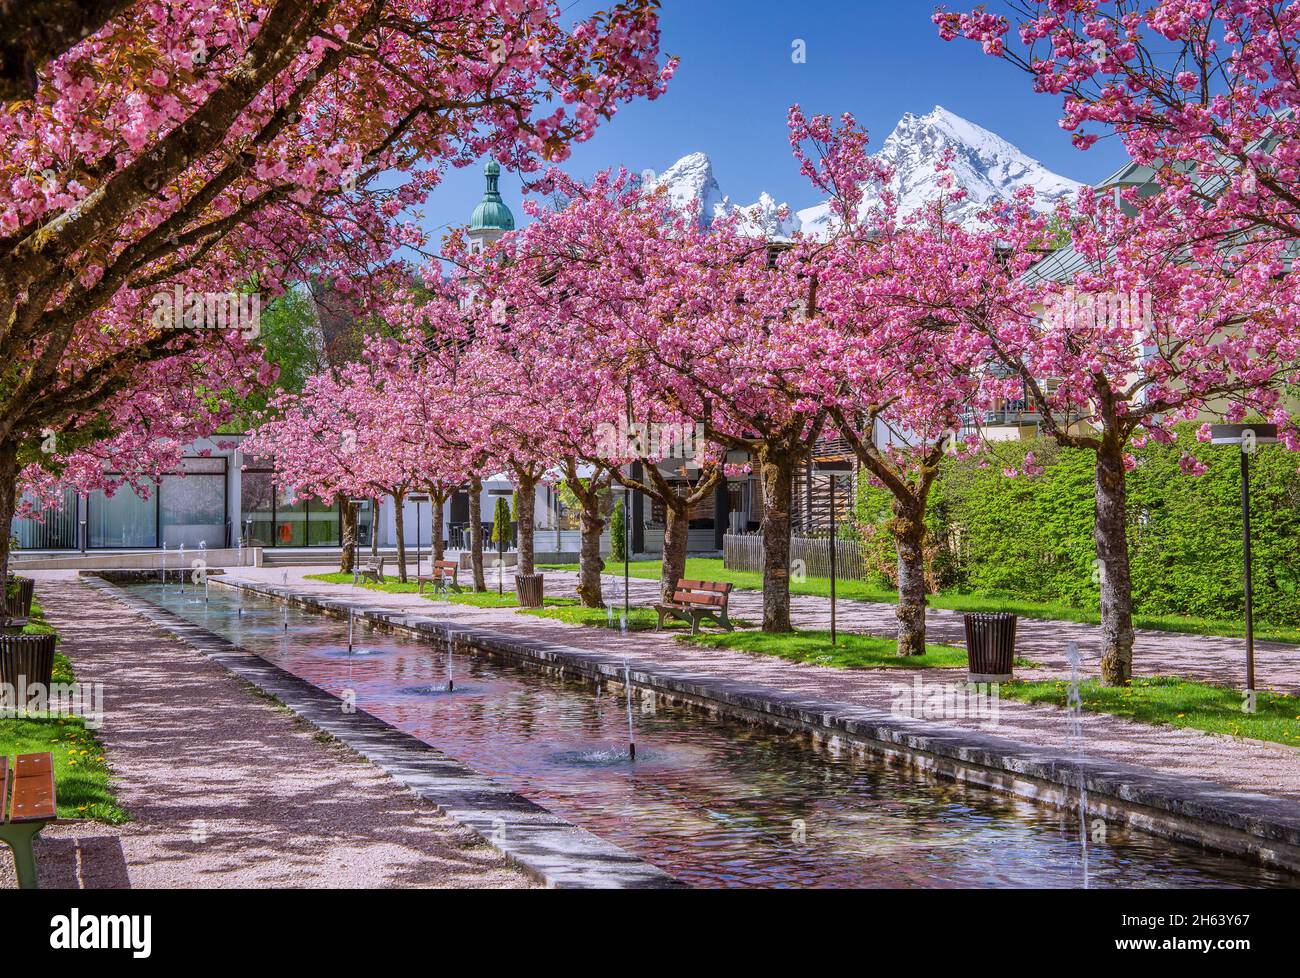 Blühende japanische Kirschbäume im Kurgarten mit Wasserbecken und Brunnen vor den watzmann 2713m, berchtesgaden, berchtesgadener alpen, berchtesgadener Land, oberbayern, bayern, deutschland Stockfoto